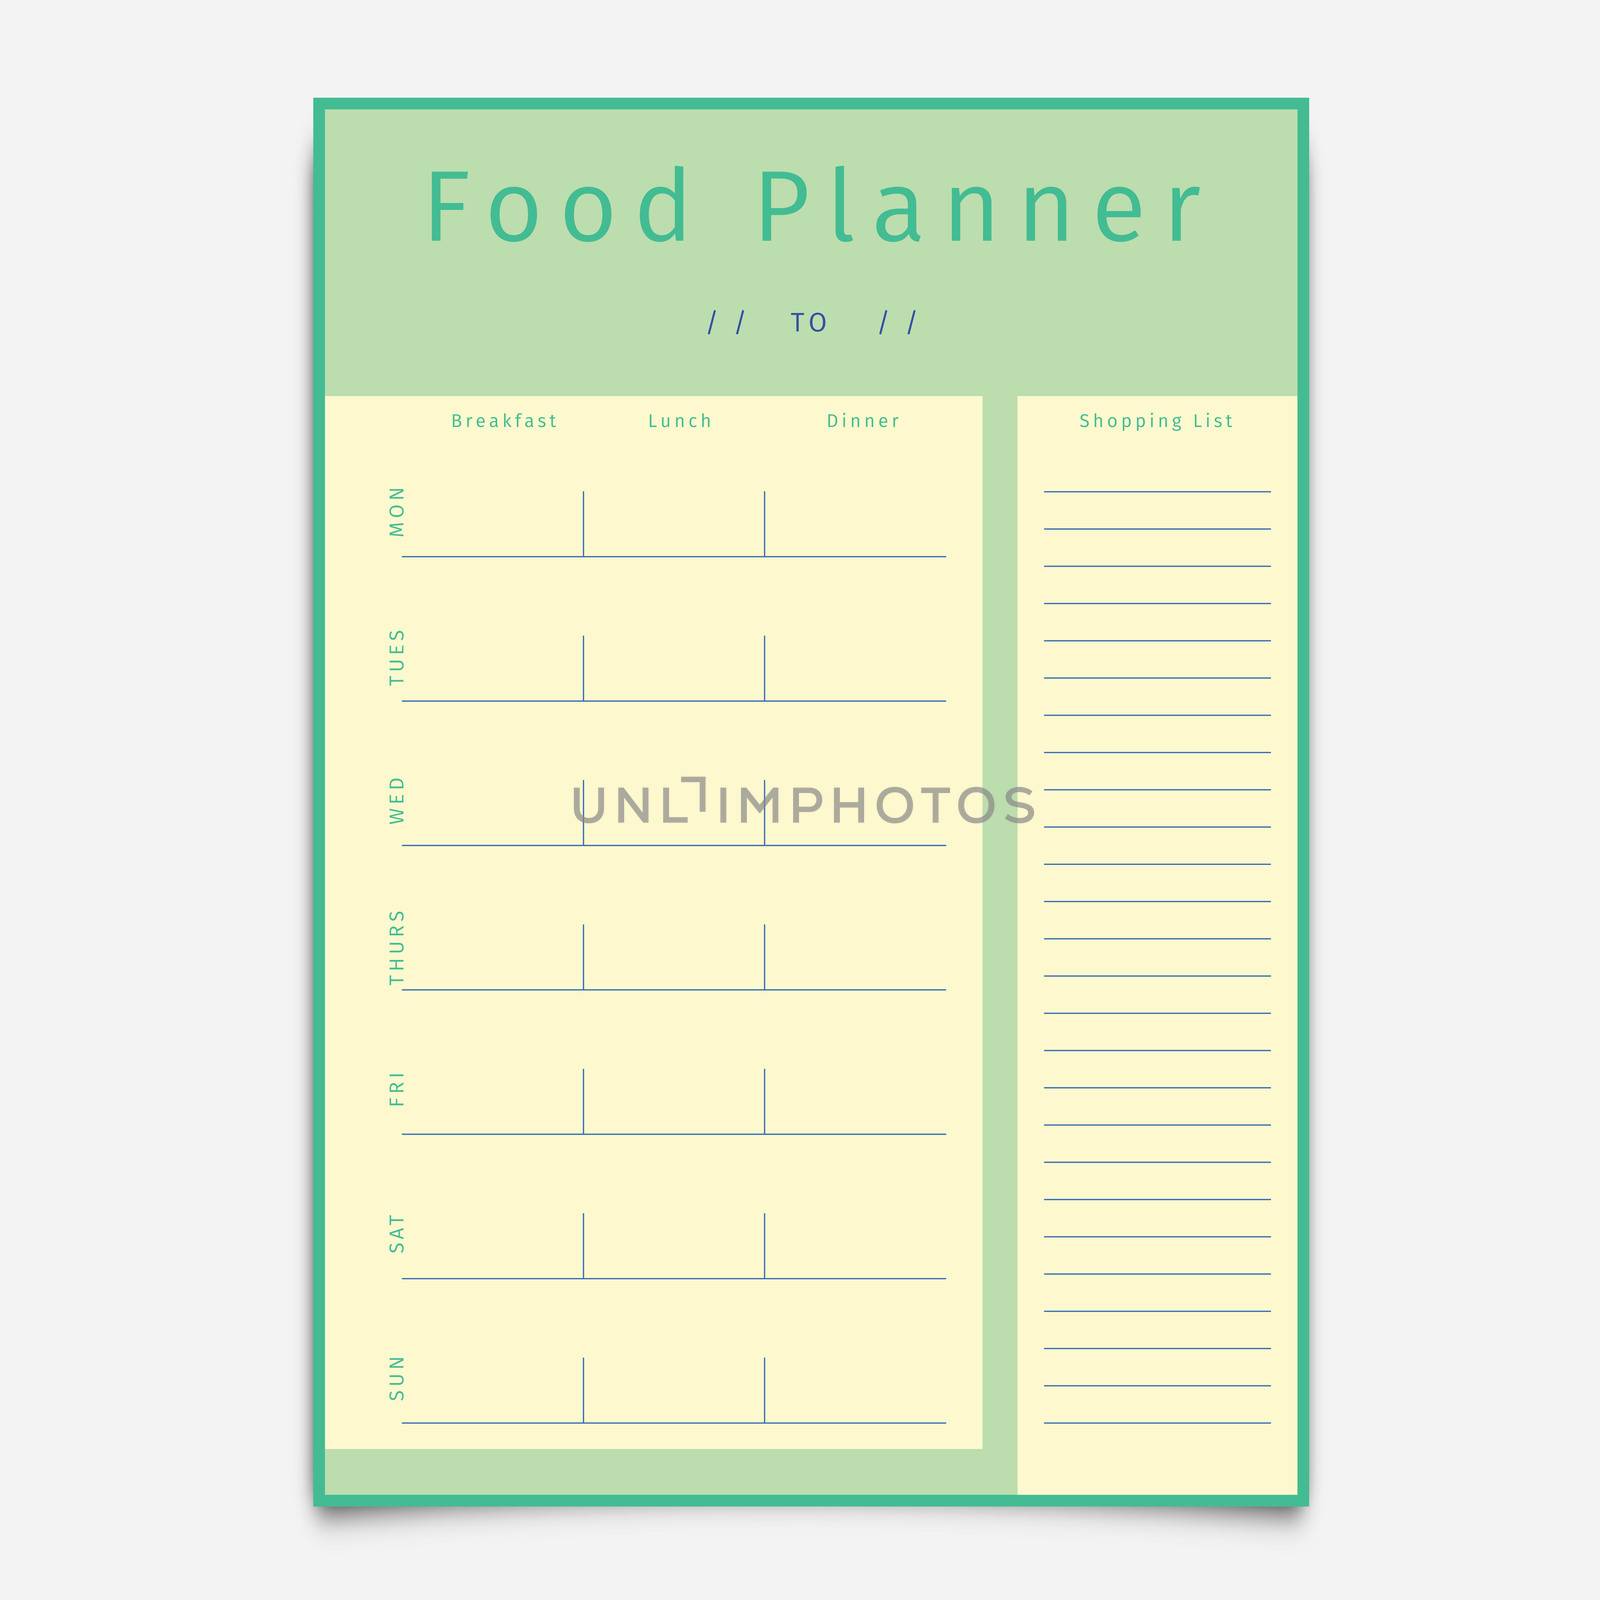 Food planner template by Wavebreakmedia